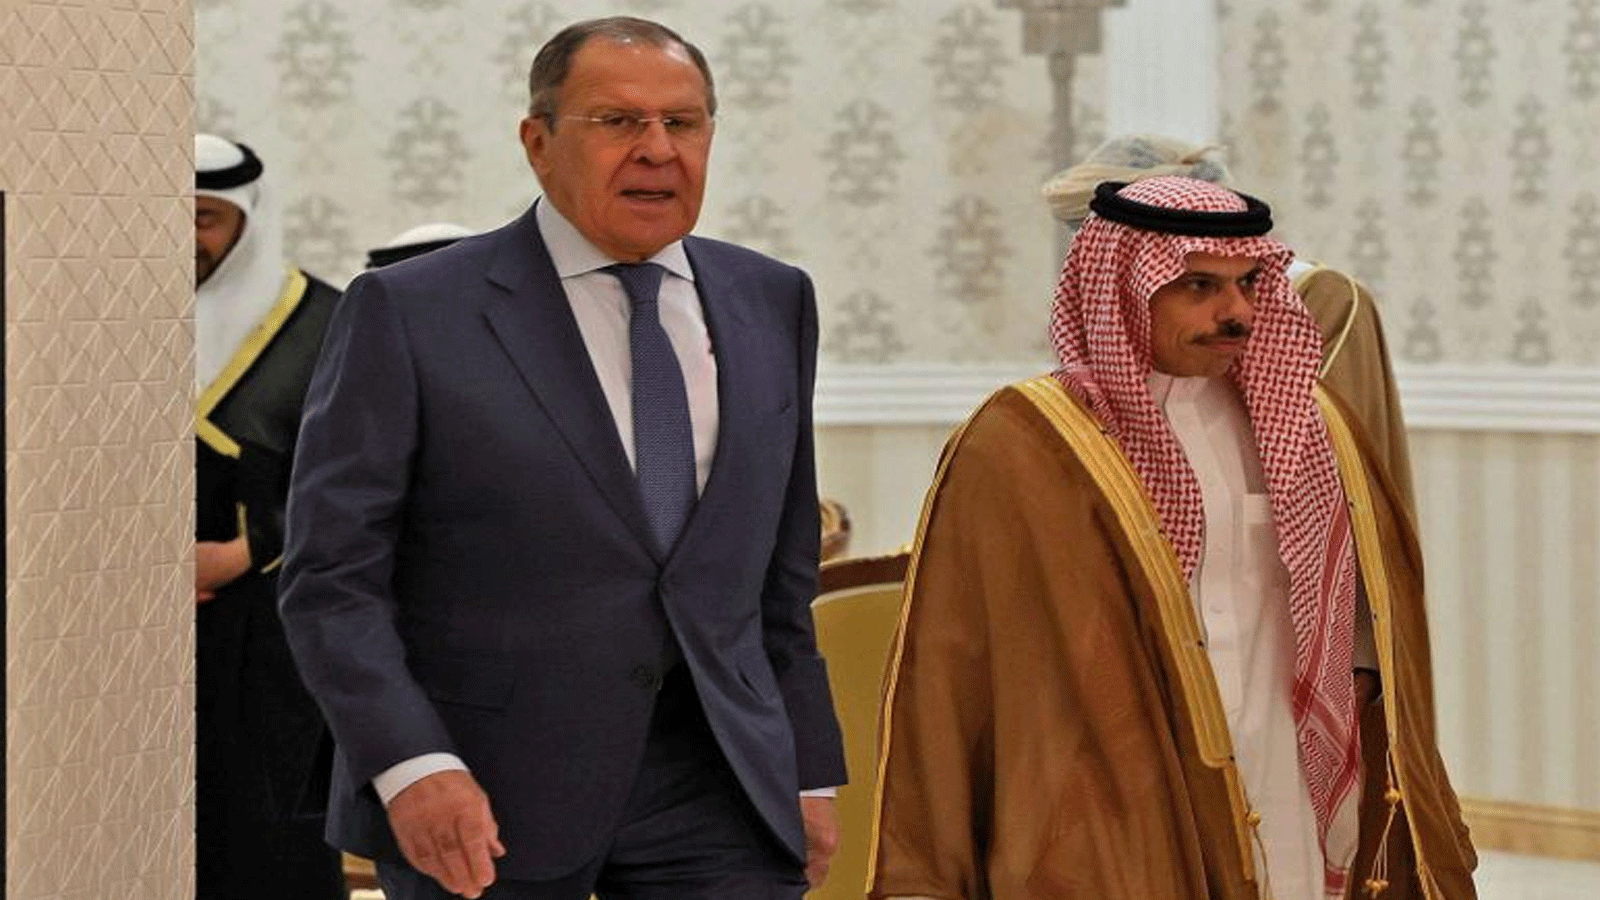 وزير الخارجية الروسي سيرغي لافروف (إلى اليسار) ونظيره السعودي الأمير فيصل بن فرحان يصلان لحضور اجتماع مجلس التعاون الخليجي في الرياض.1 حزيران\يونيو 2022.